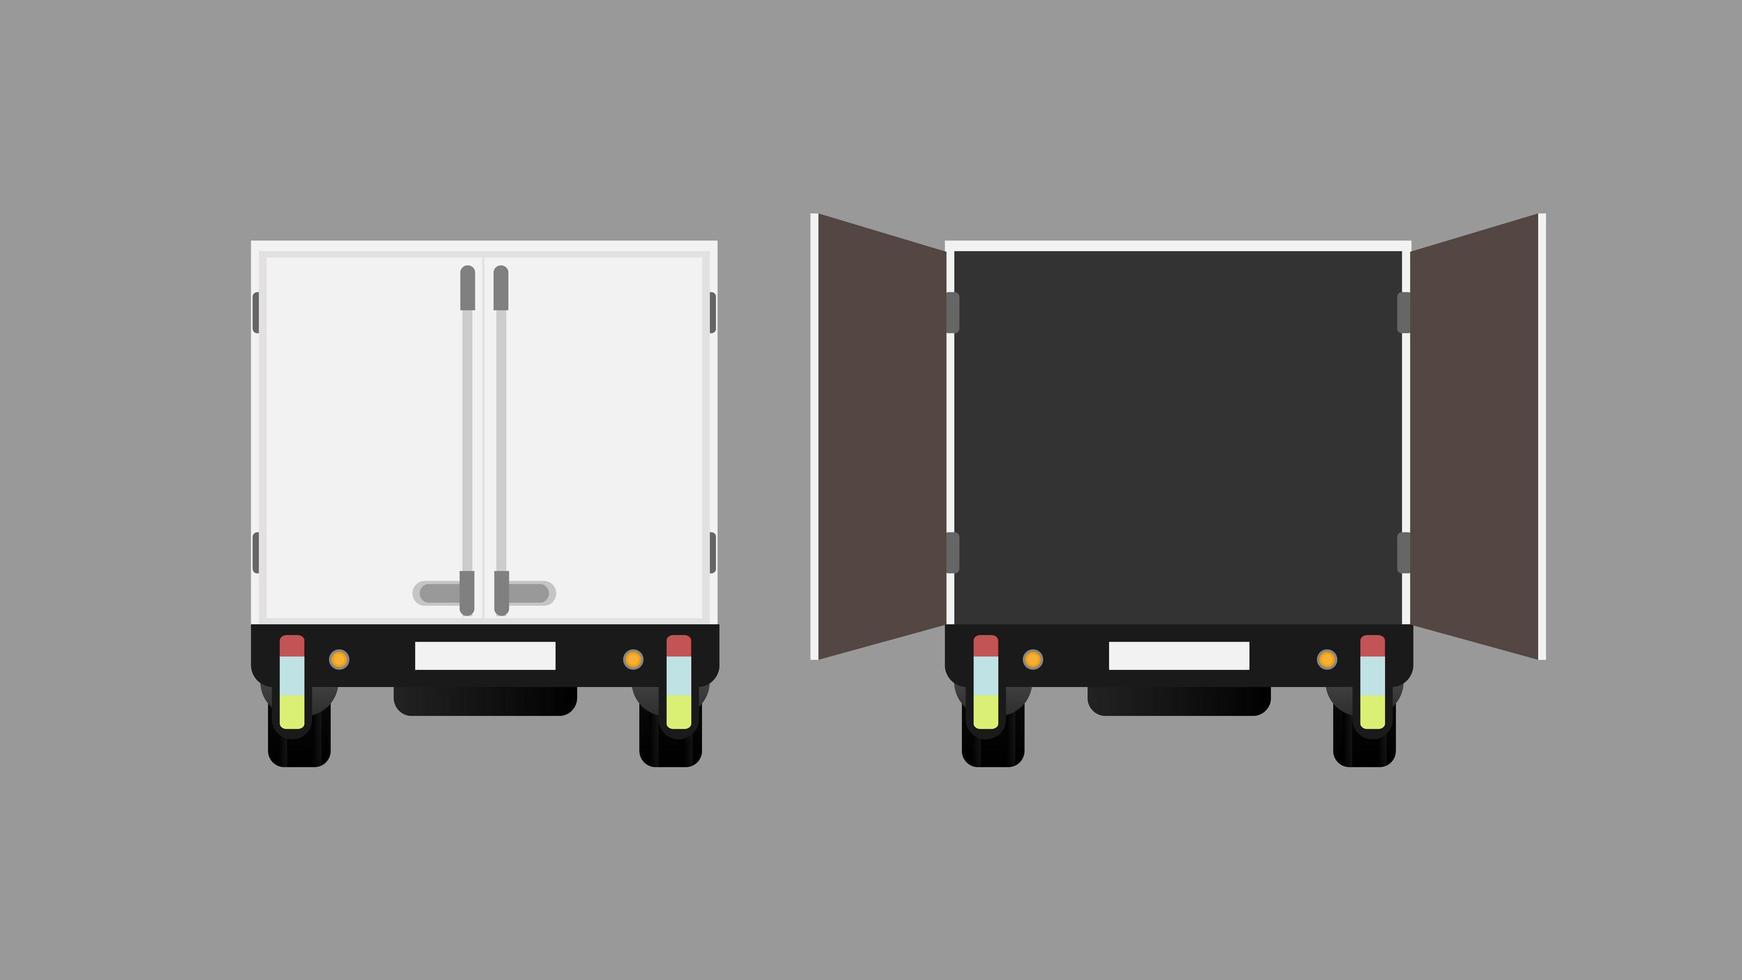 vista traseira do caminhão. caminhão aberto. elemento de design sobre o tema transporte e entrega de mercadorias. isolado. vetor. vetor